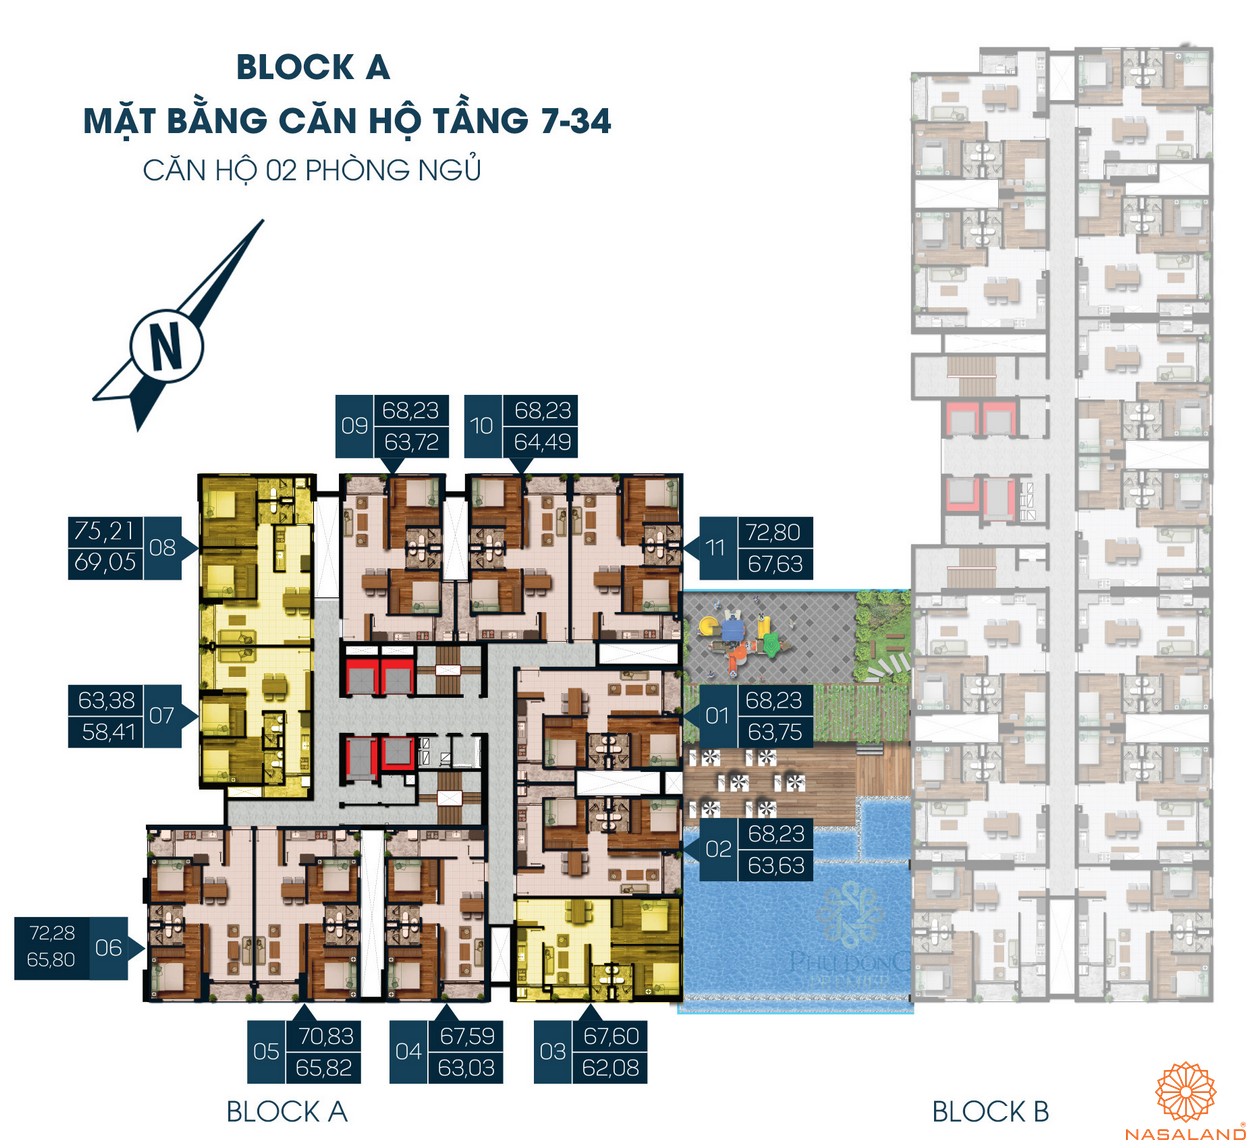 Mặt bằng dự án căn hộ Phú Đông Premier Bình Dương - Block A tầng 7-34 2PN